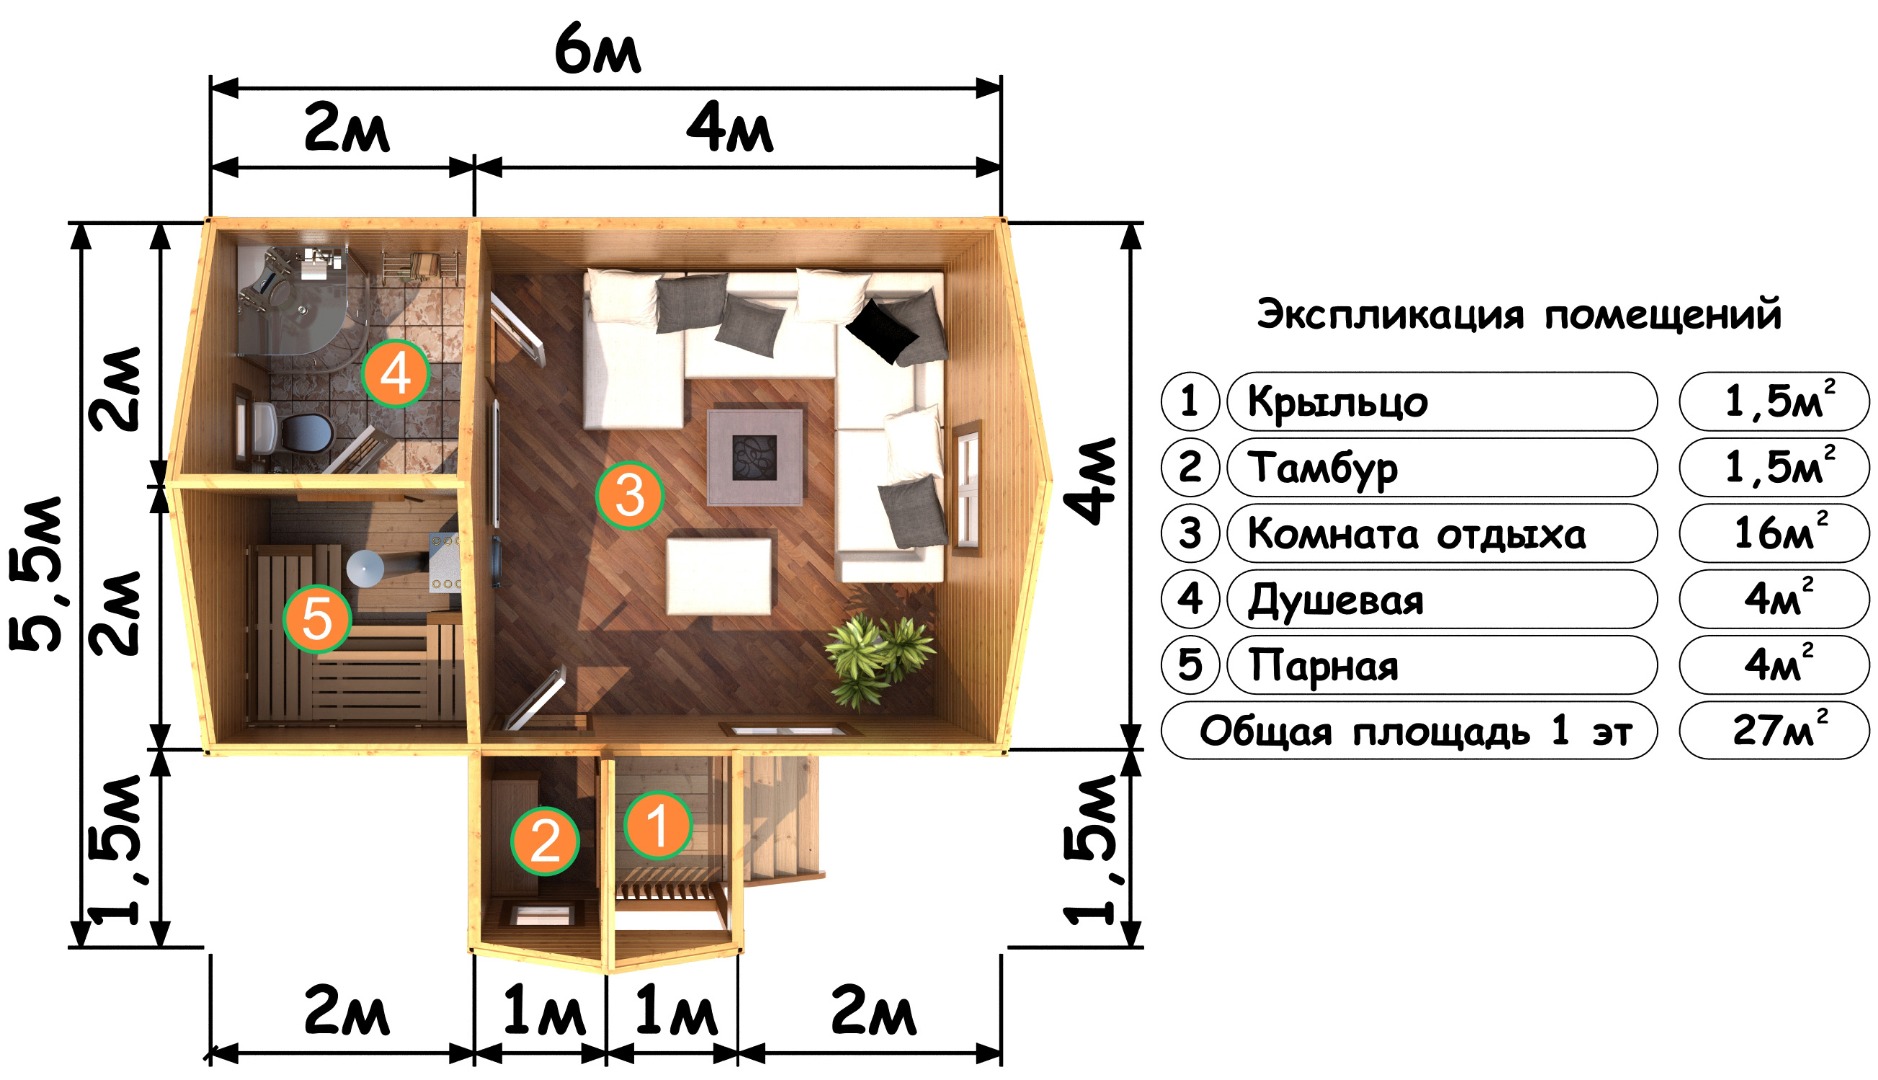 Бани 6х4 с террасой – варианты планировок и популярные проекты строительства в москве, фото